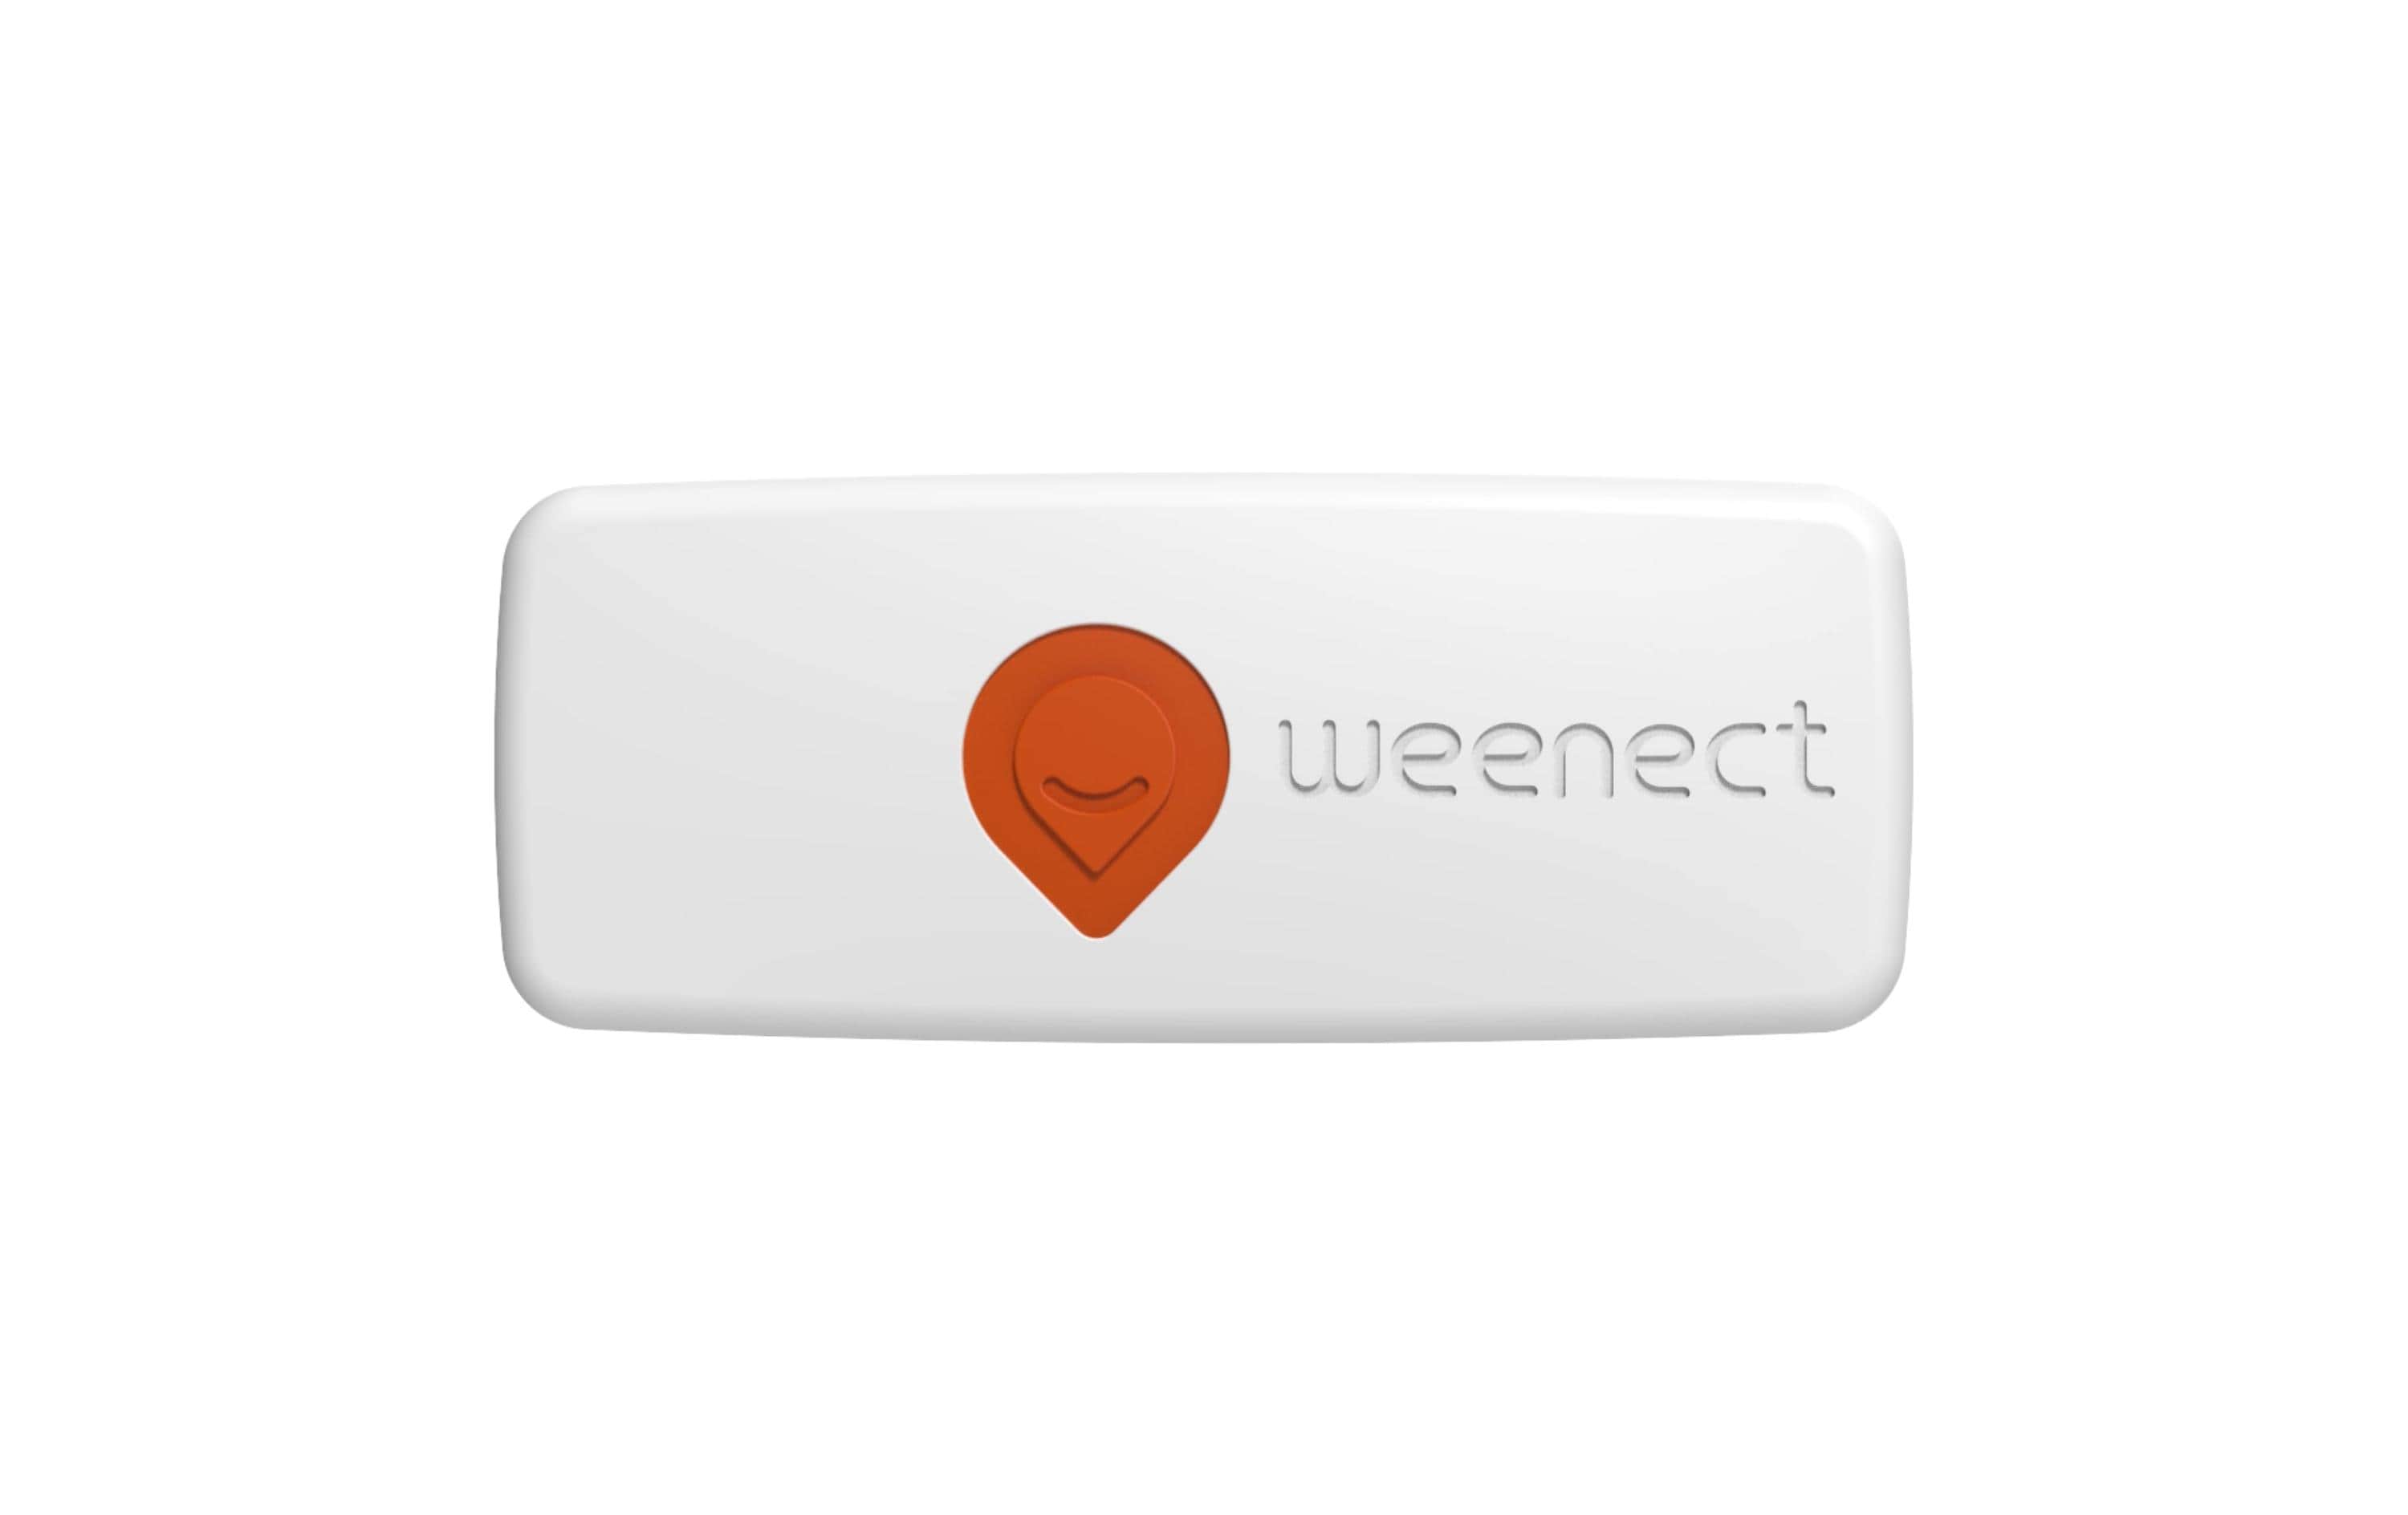 Weenect GPS-Tracker XS für Katzen, Weiss